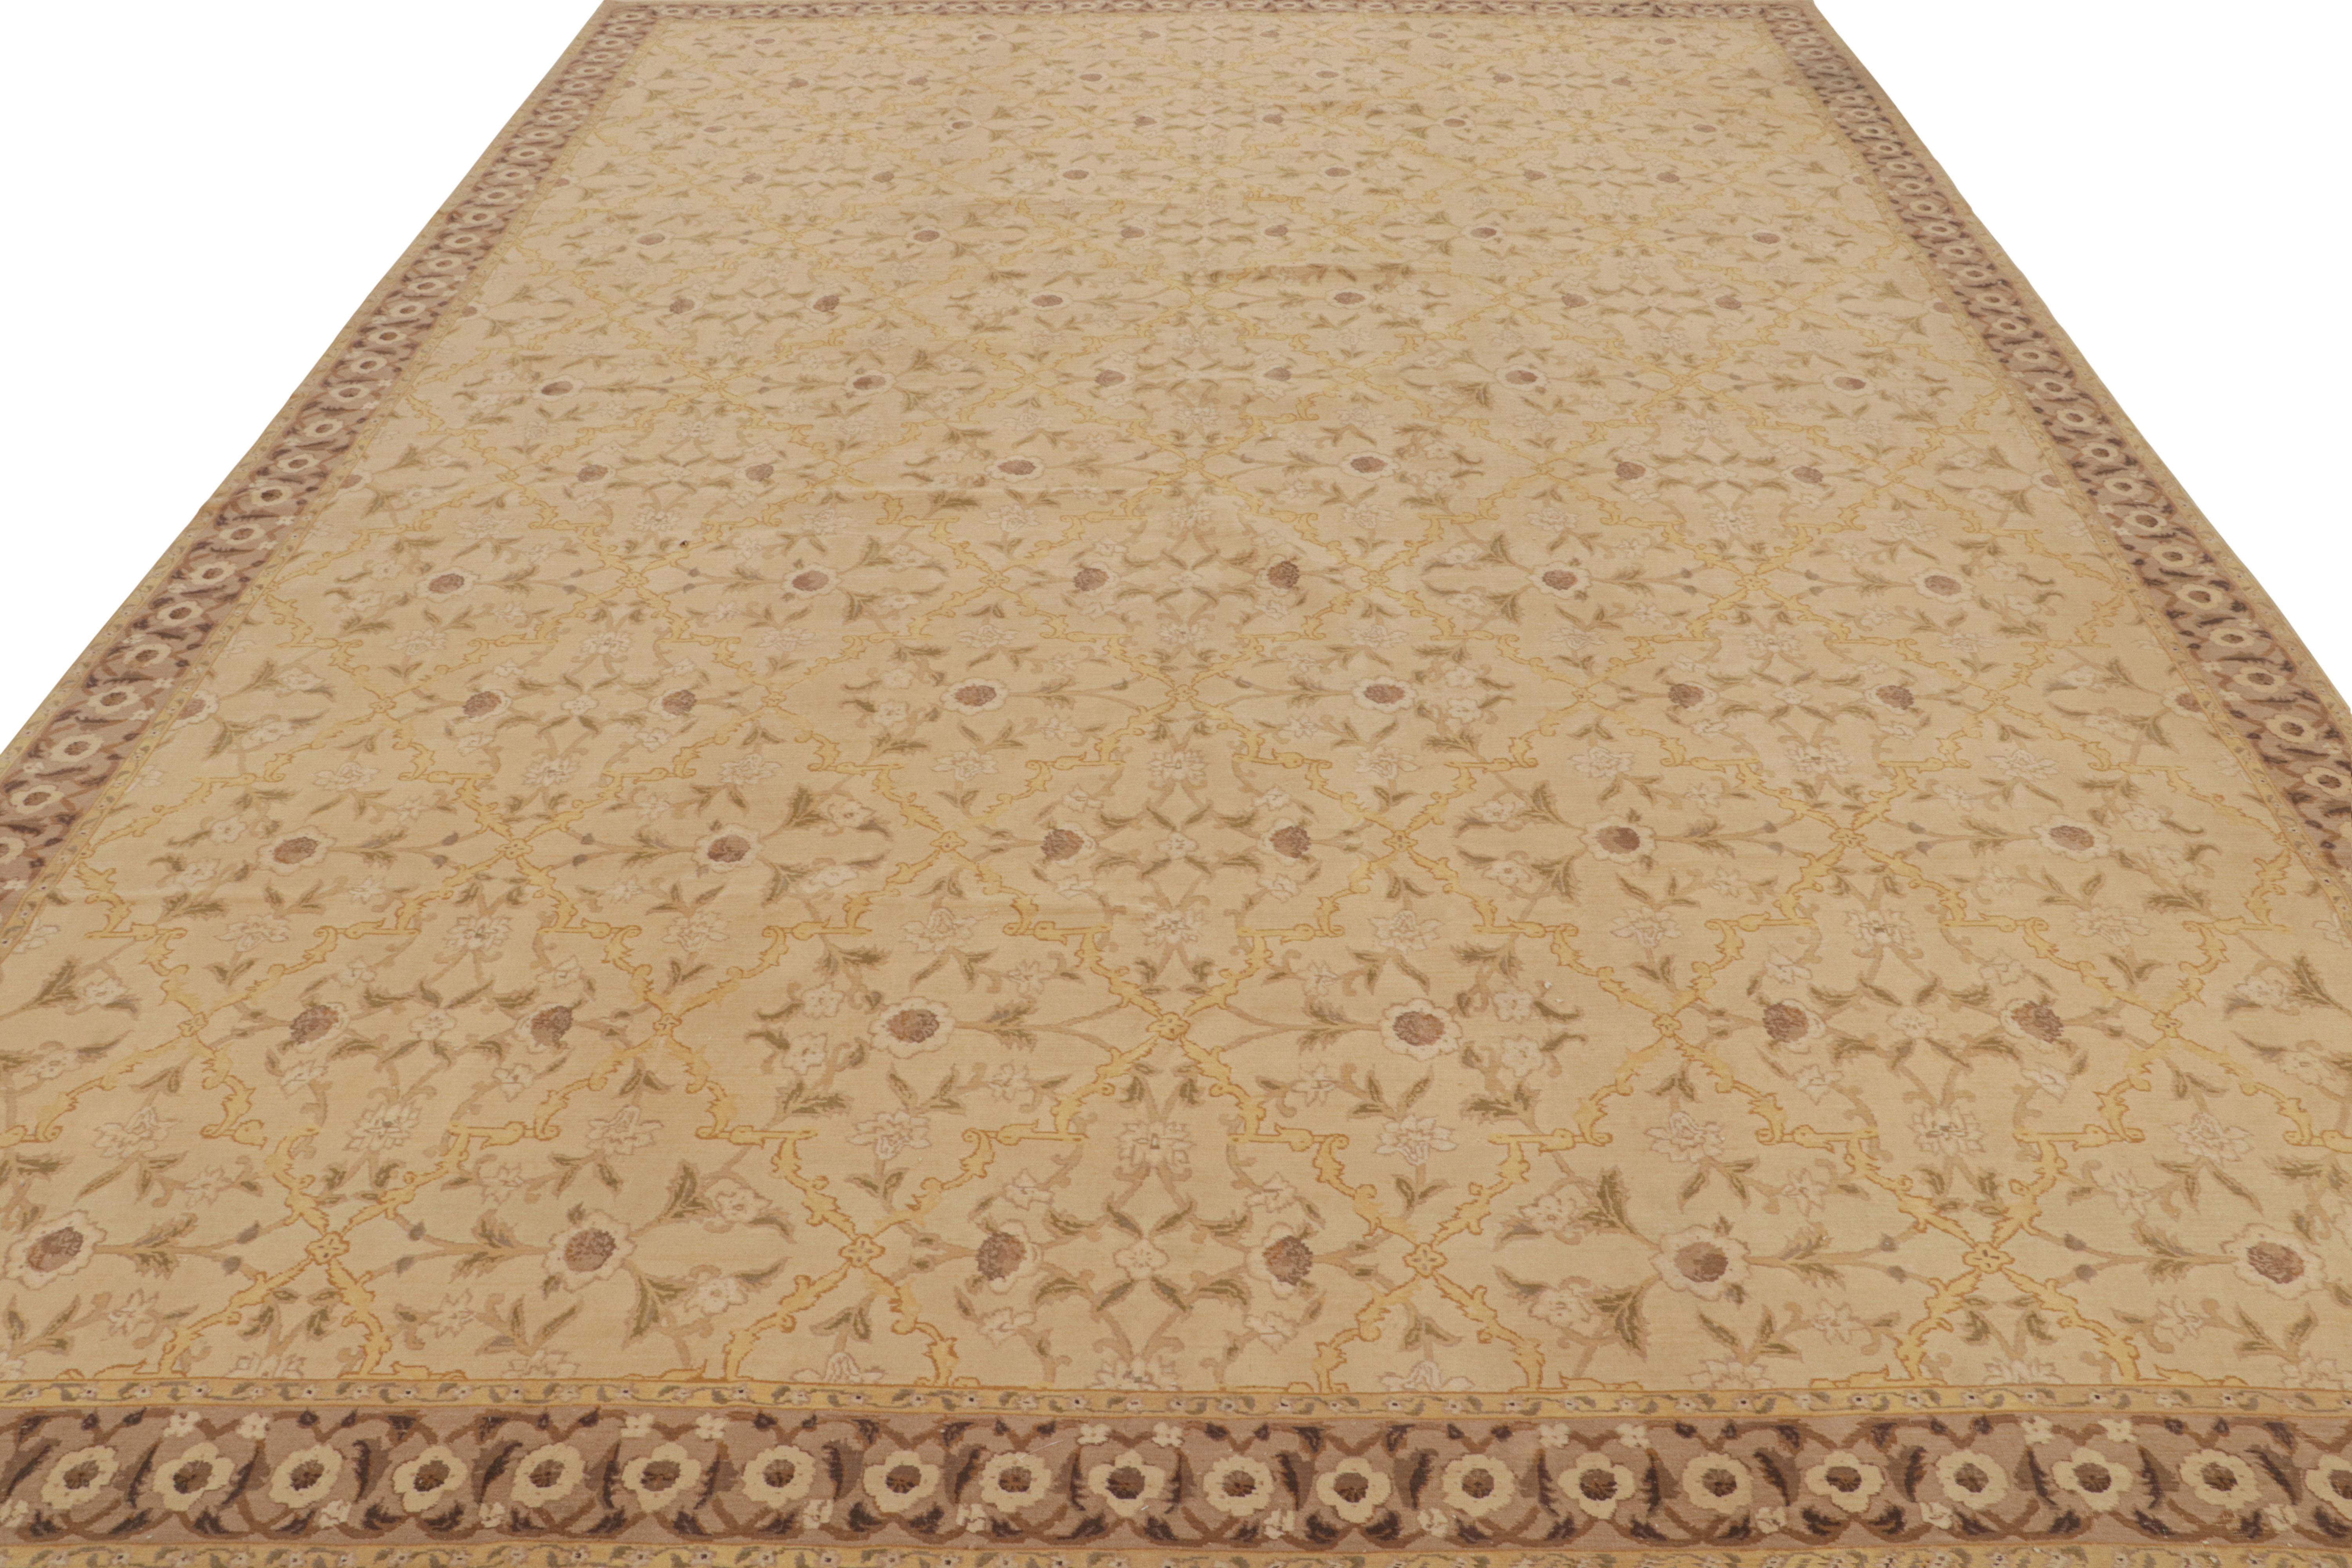 Islamic Rug & Kilim’s East Turkestan Inspired Beige Brown Herati Wool Floral Rug For Sale